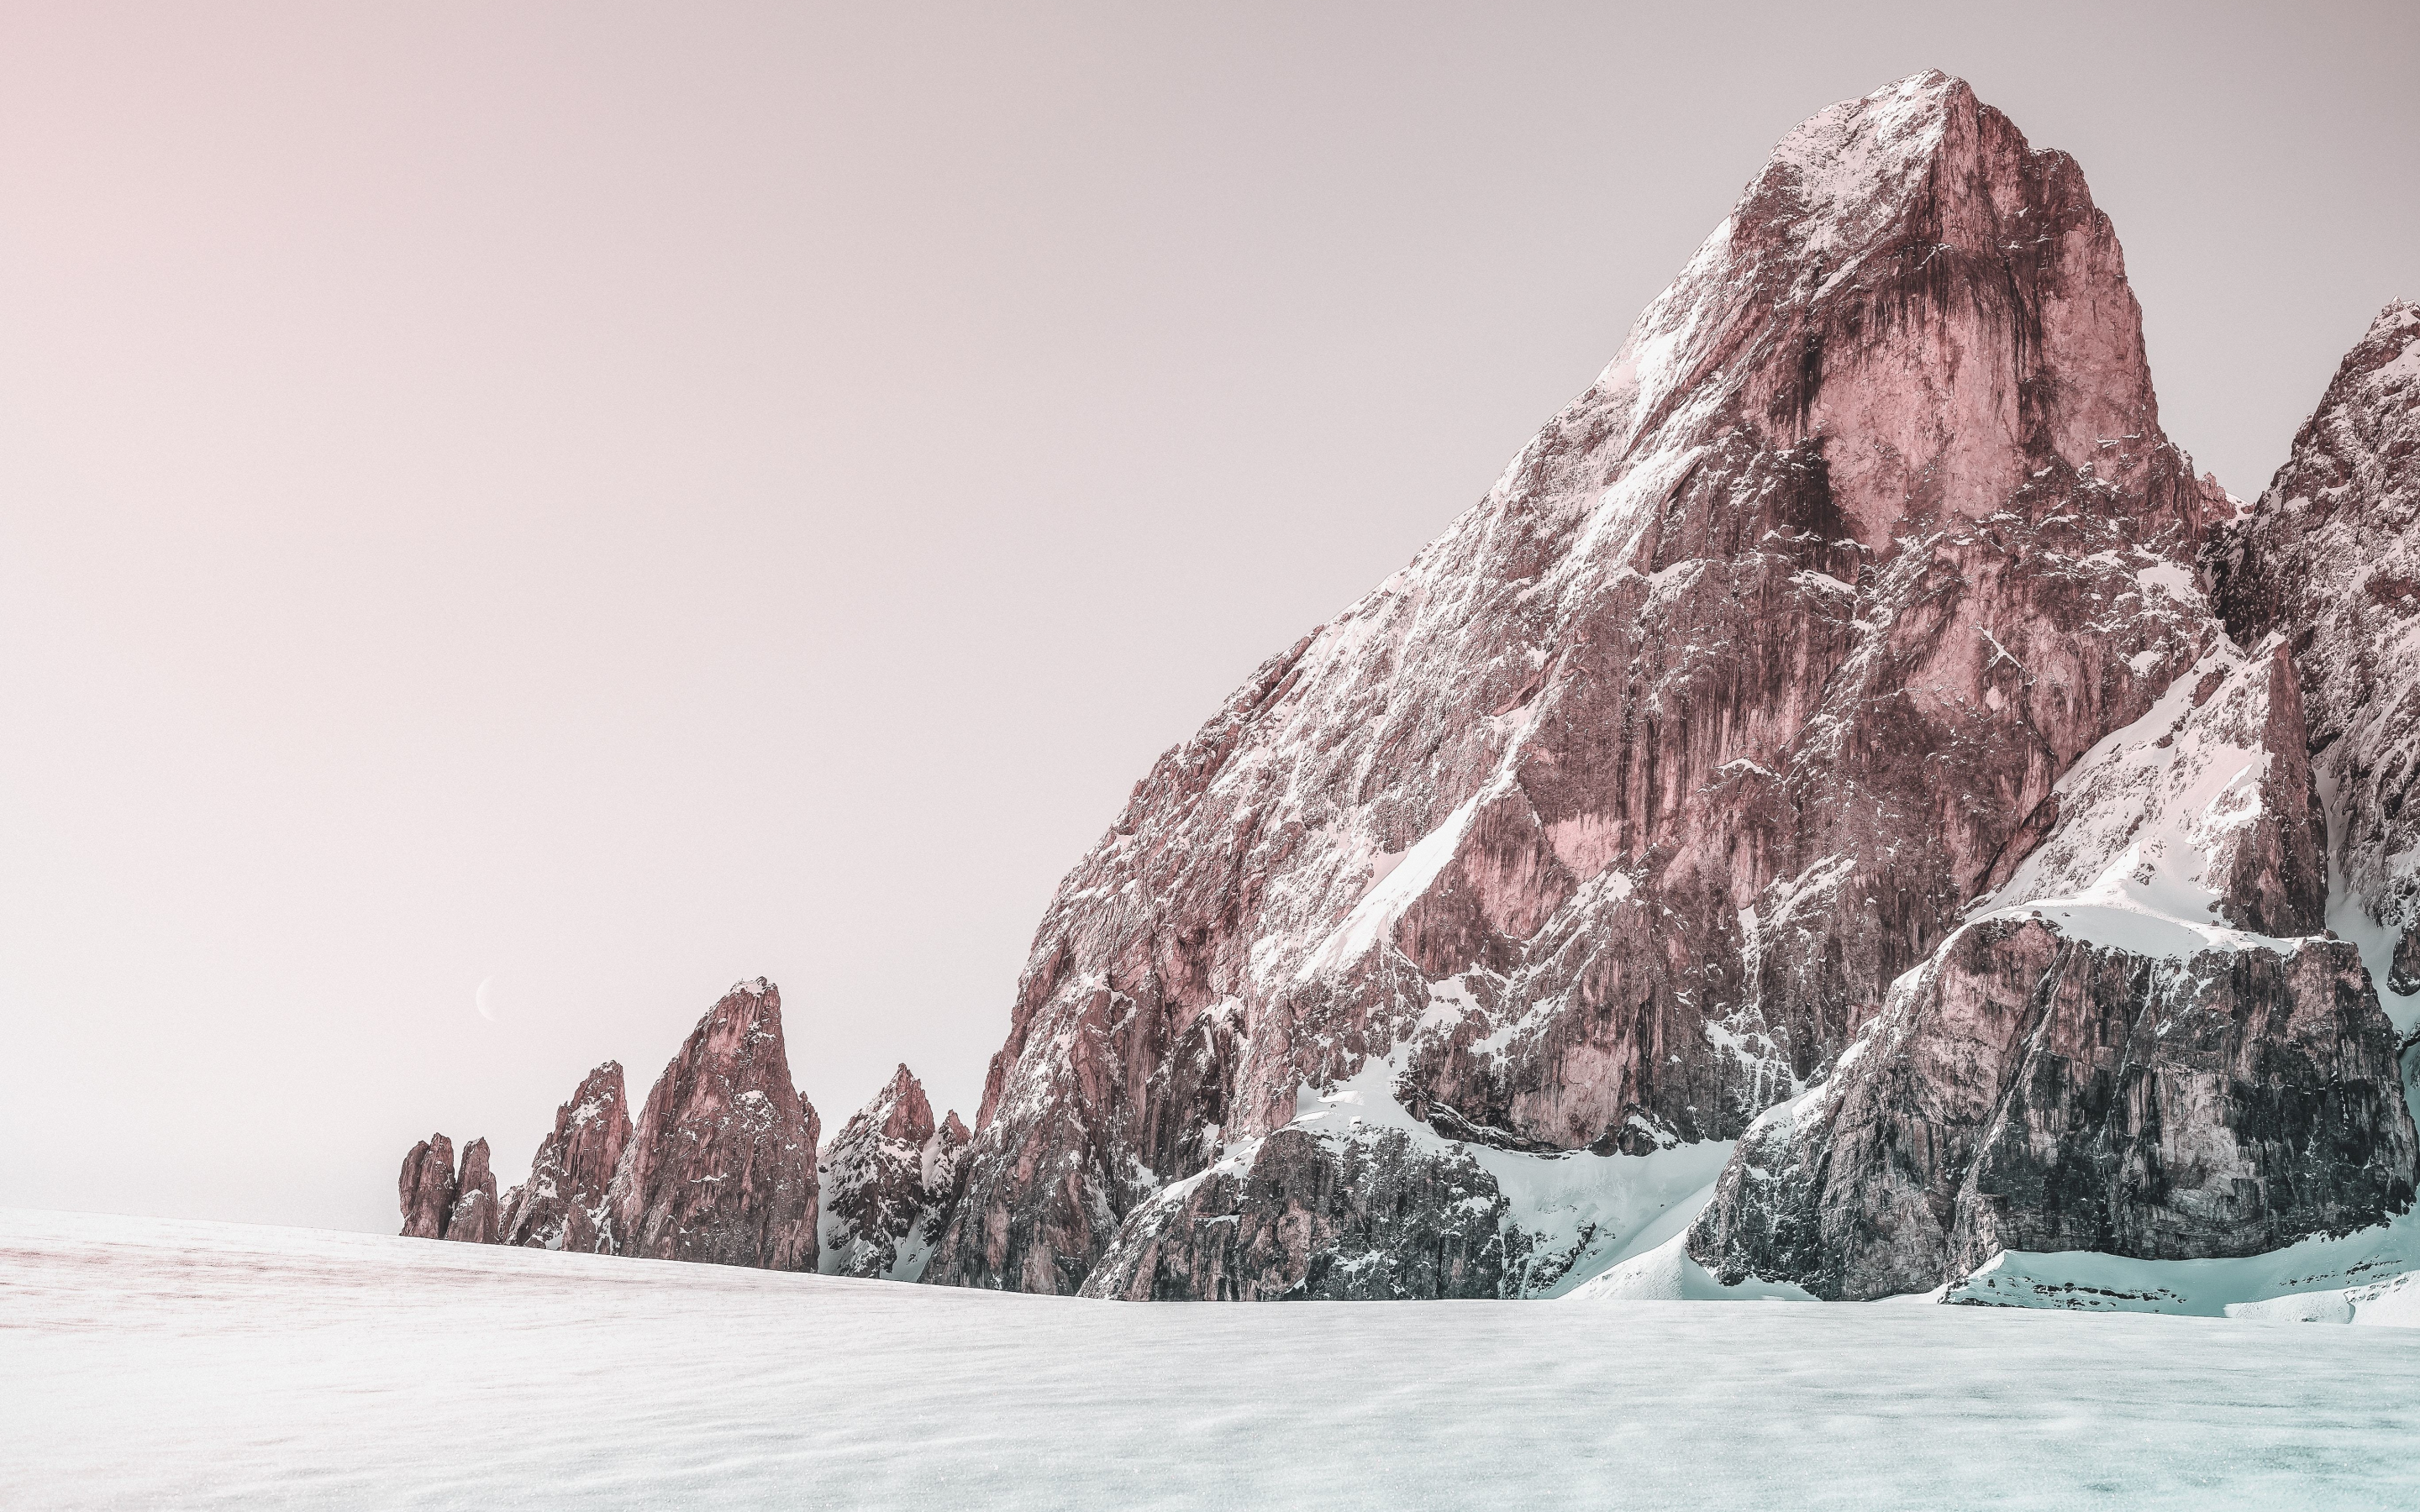 Nature, winter, rocky cliffs, 2880x1800 wallpaper